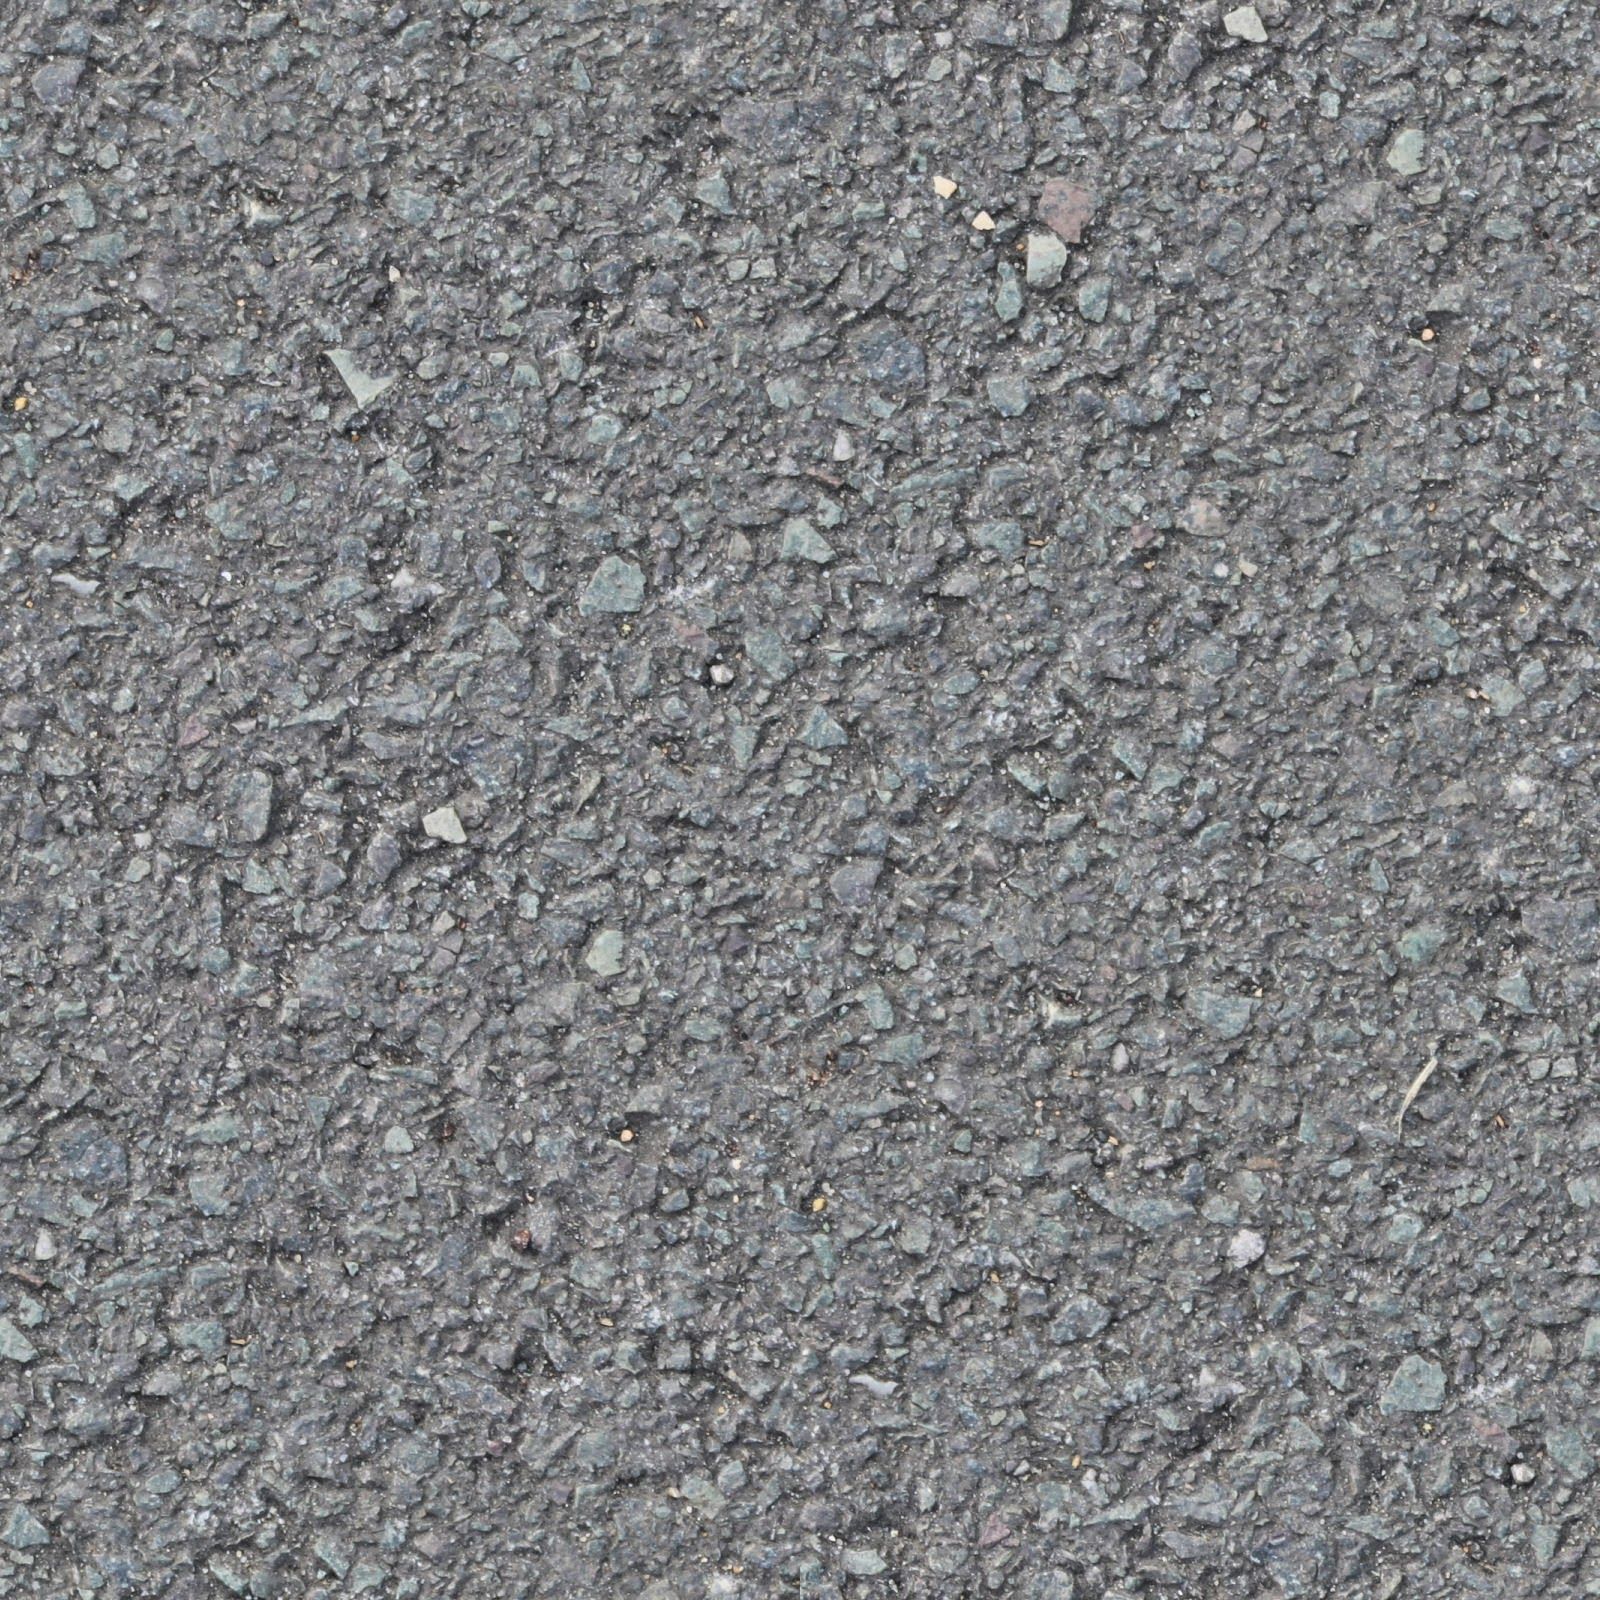 Tileable+concrete+asphalt+road+floor+texture+(1).jpg 800×800 pixels ...